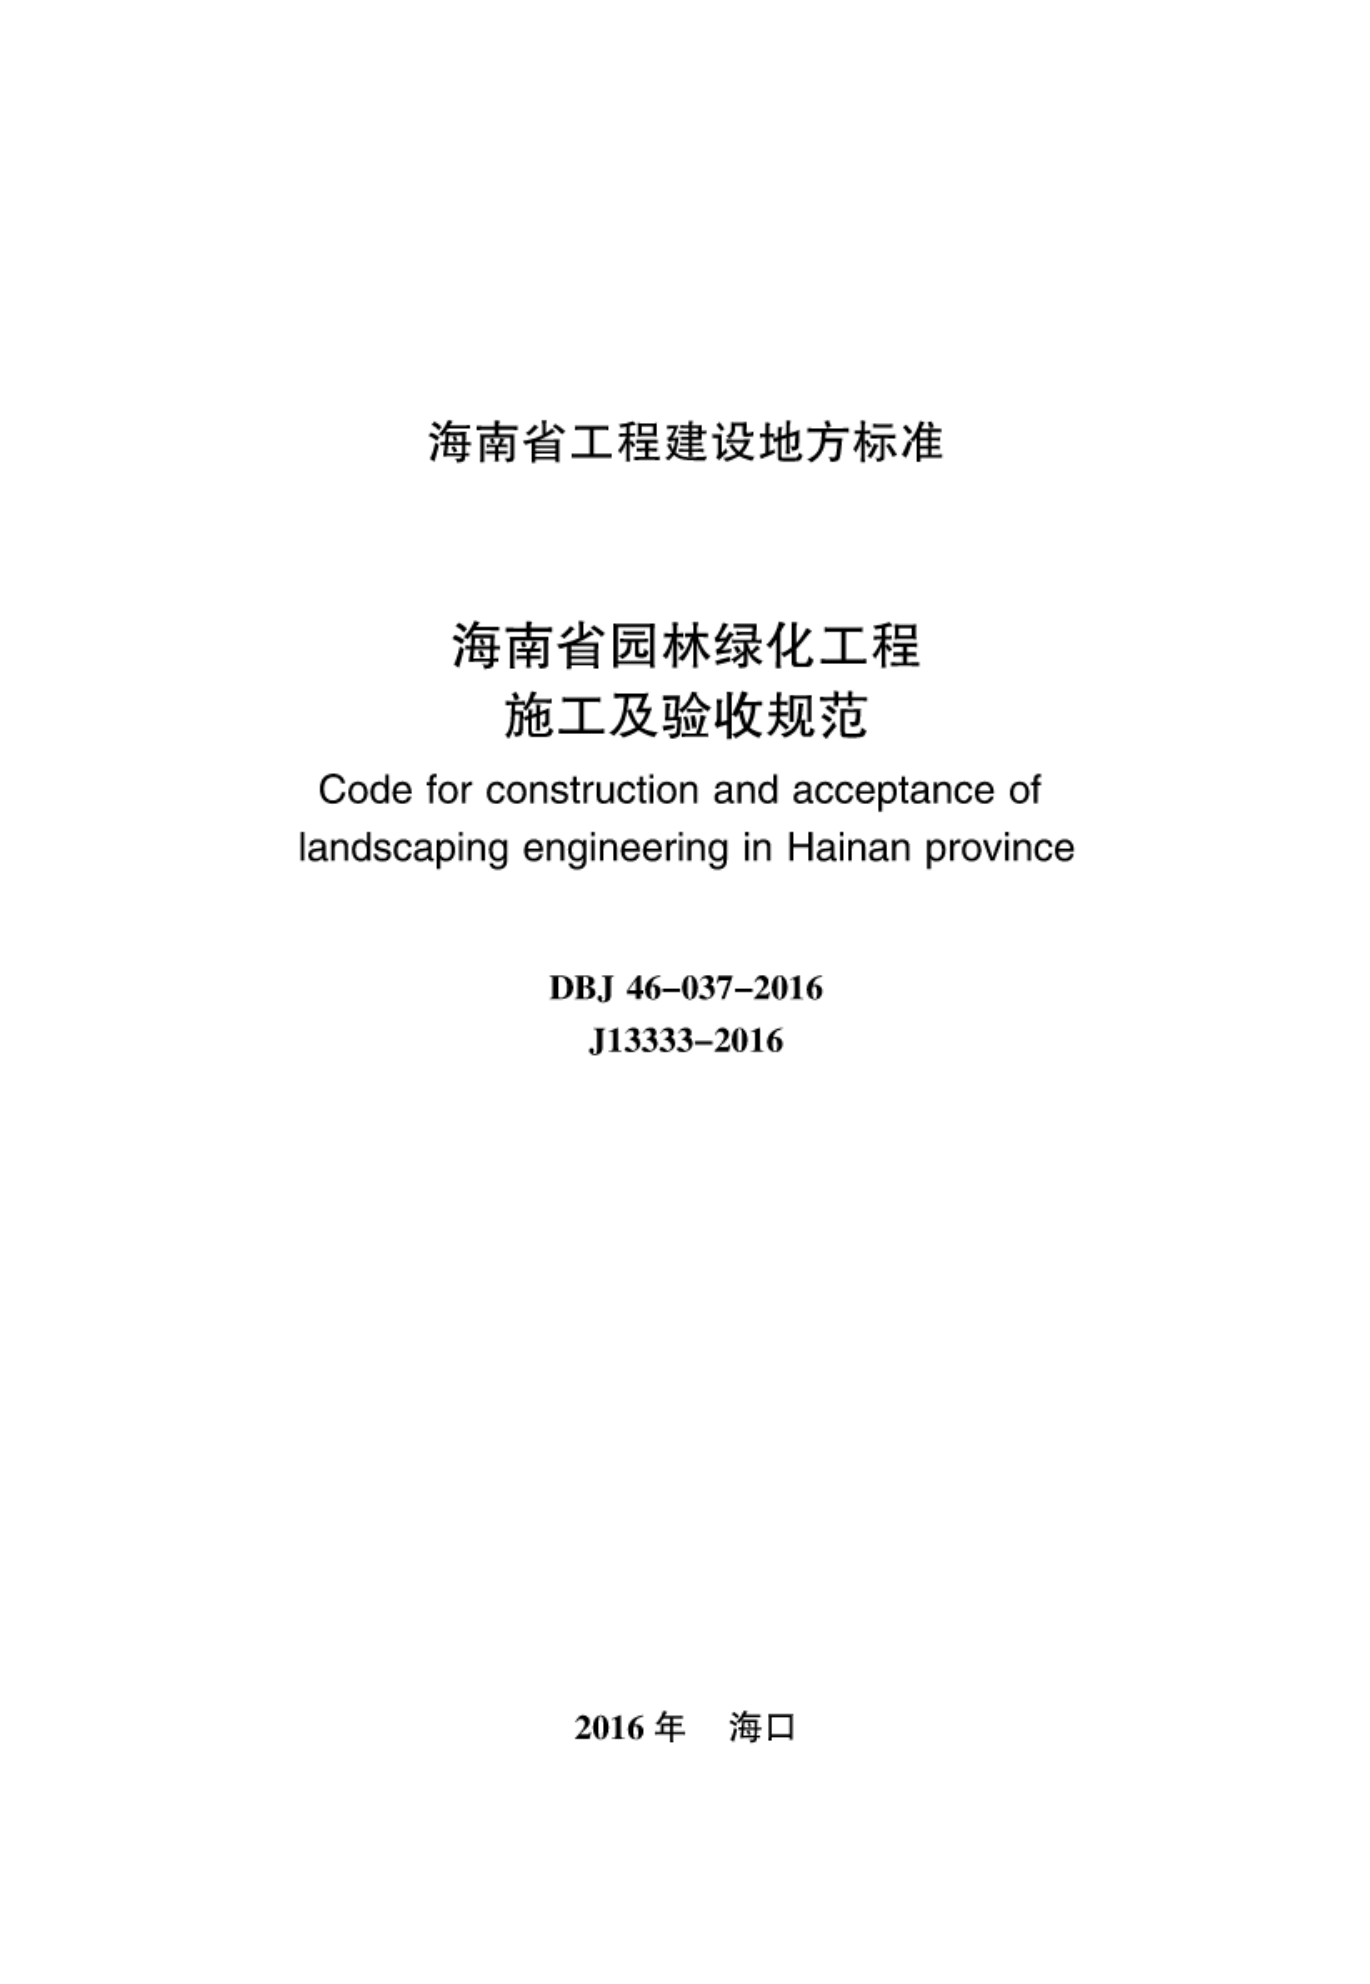 DBJ 46-037-2016 海南省园林绿化工程施工及验收规范-2